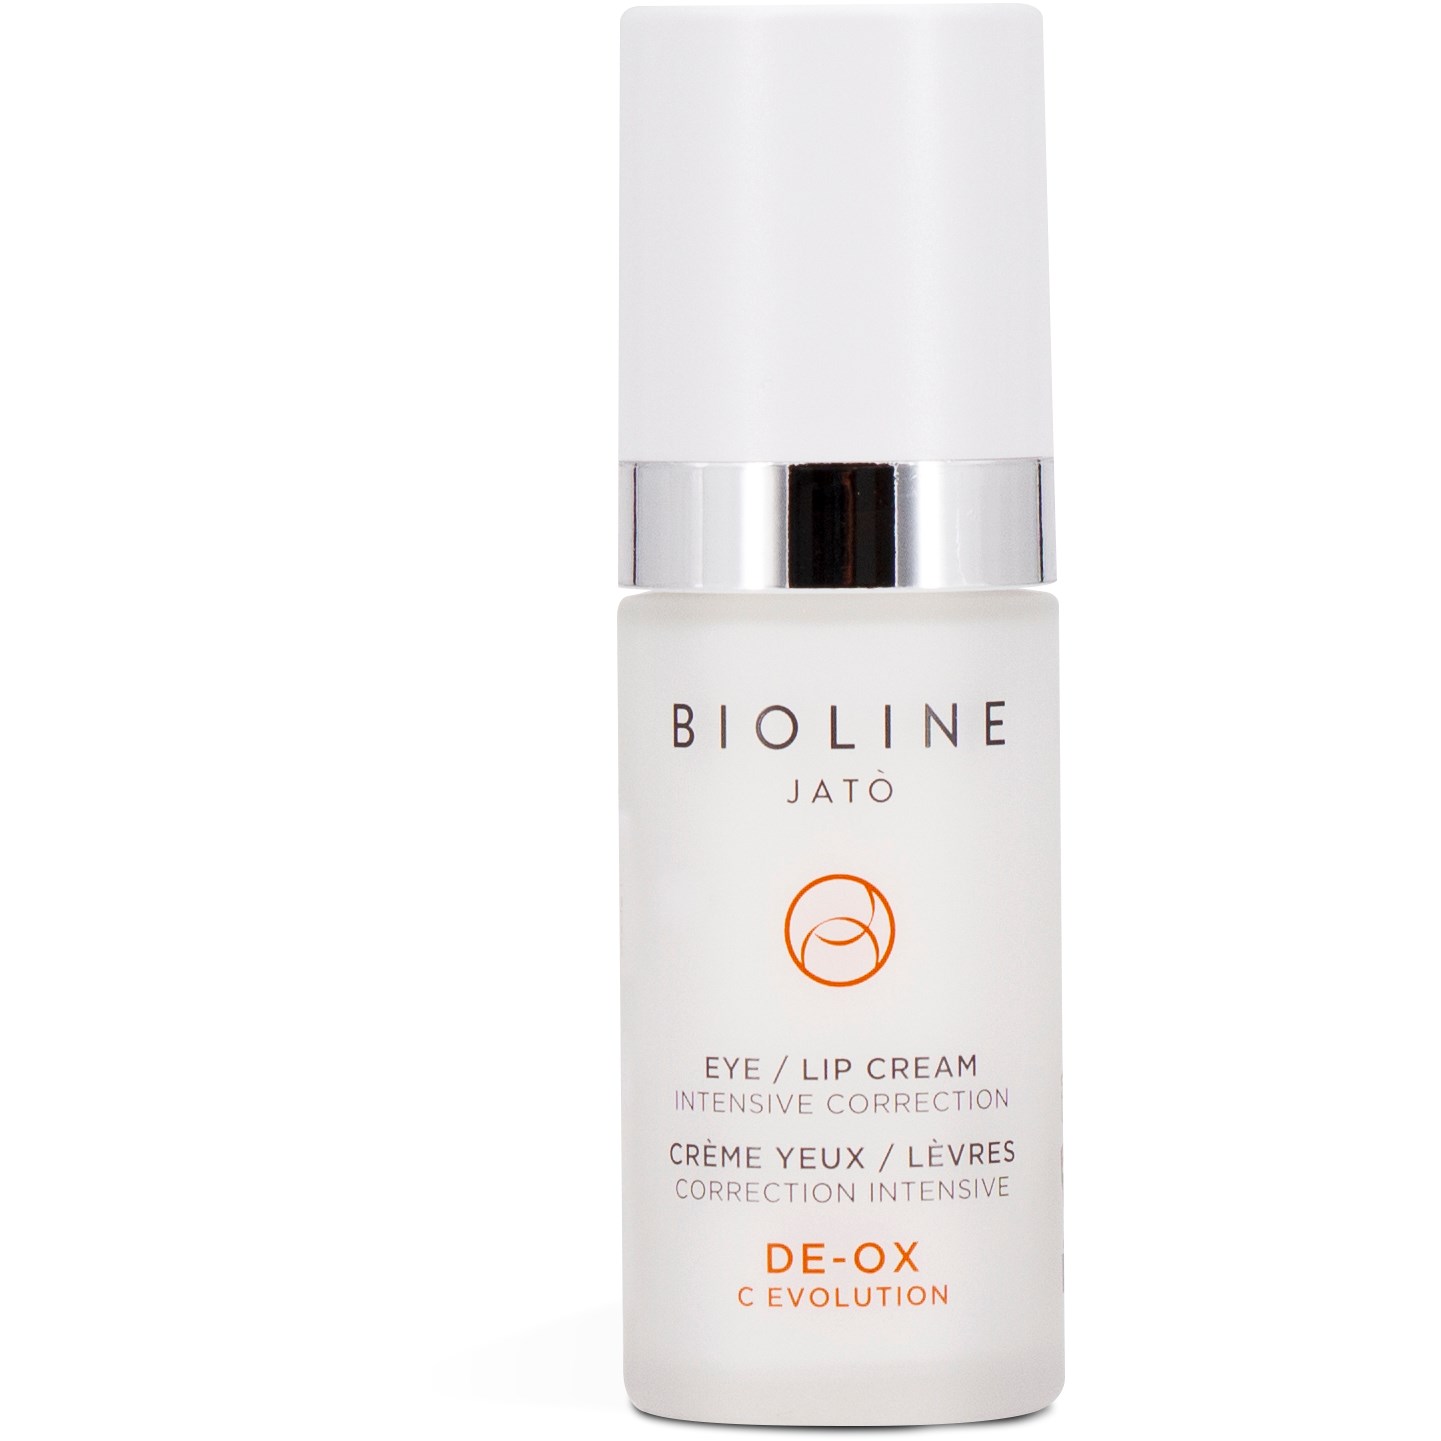 Bioline Jatò De-Ox Advanced Eye/lip Cream 30 ml